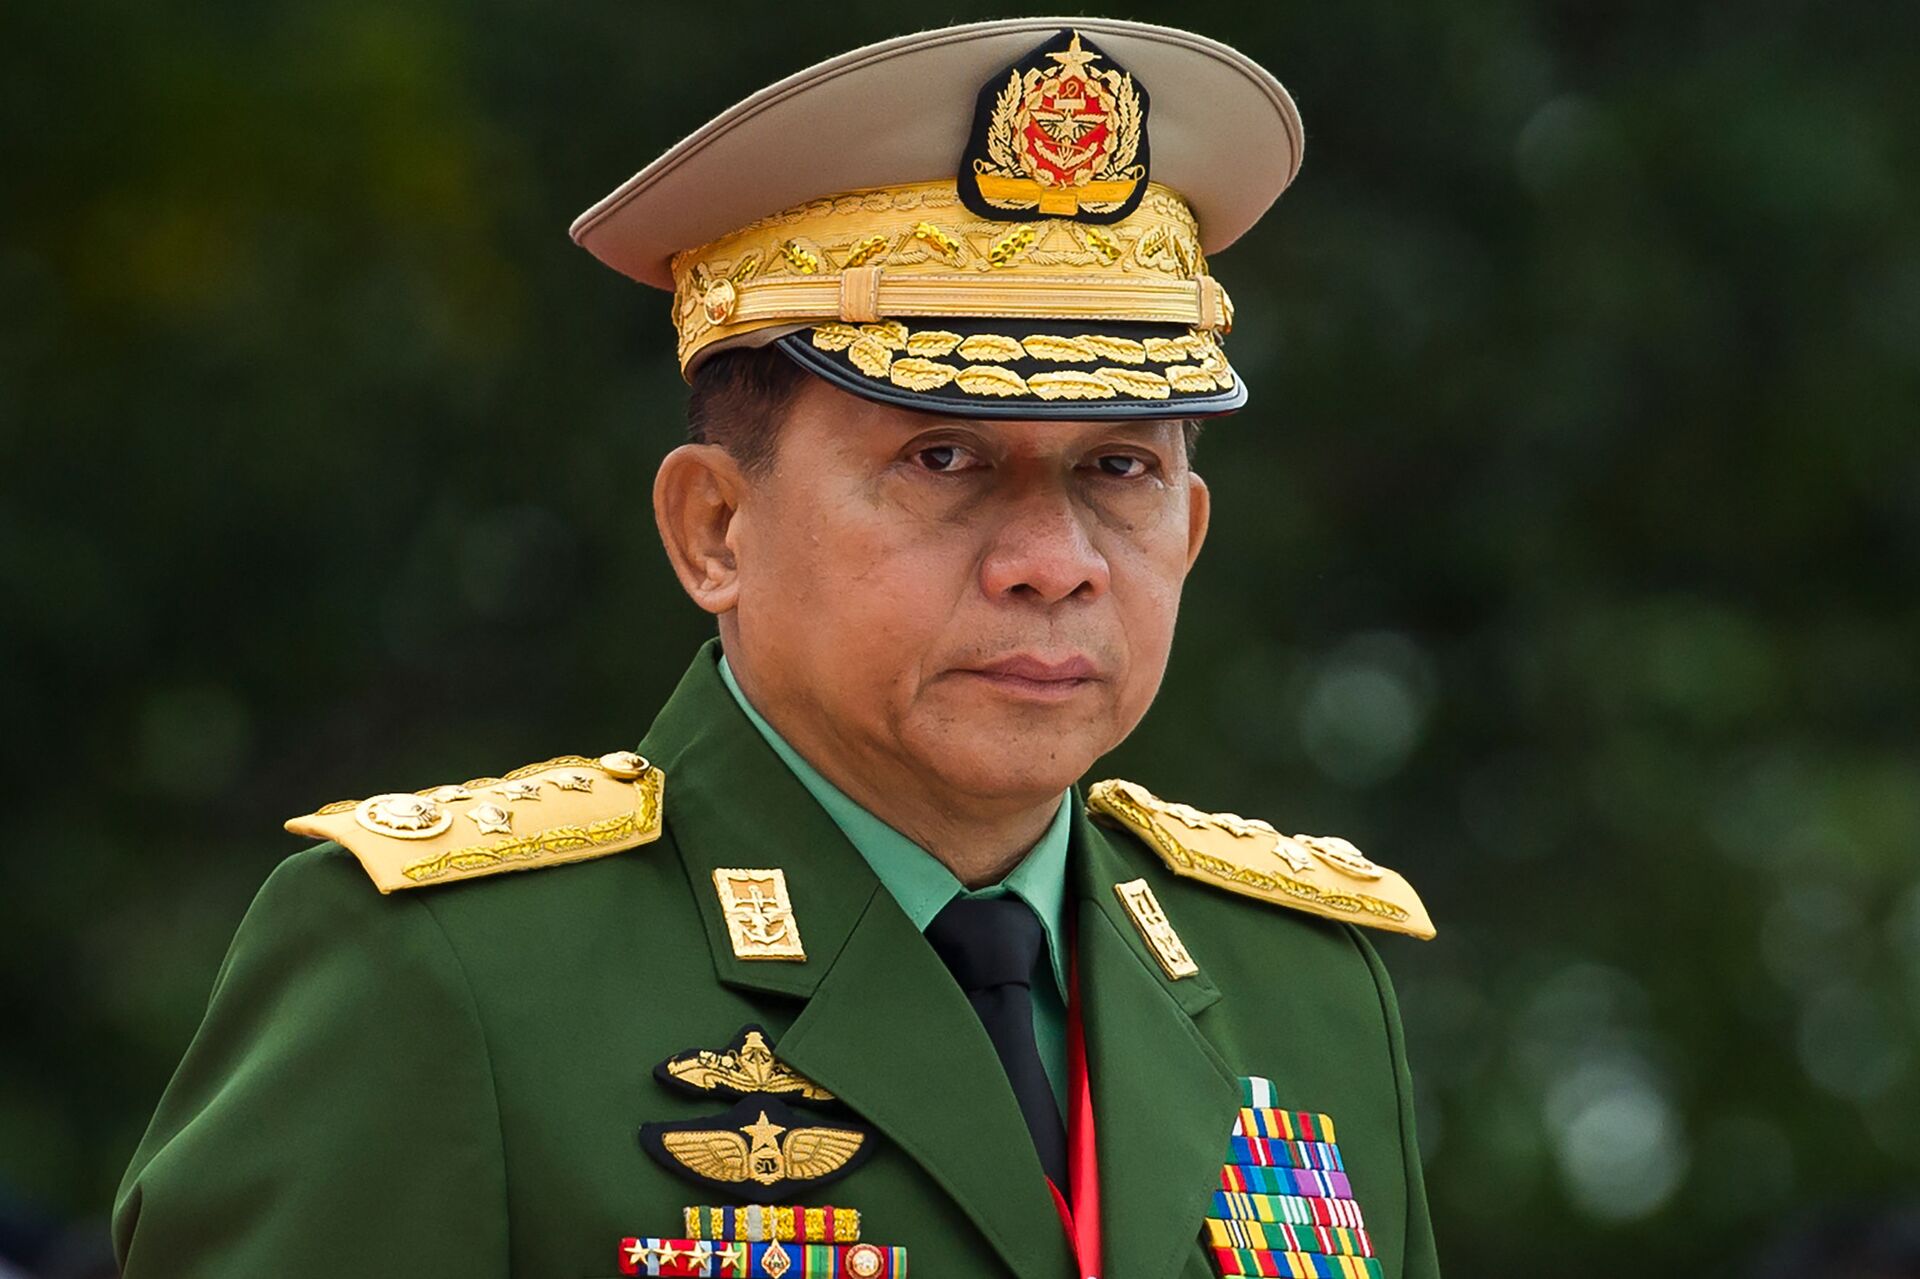 Sự kiện ở Myanmar là lời cảnh báo của quân đội về việc kiểm soát quyền lực nhà nước - Sputnik Việt Nam, 1920, 01.02.2021